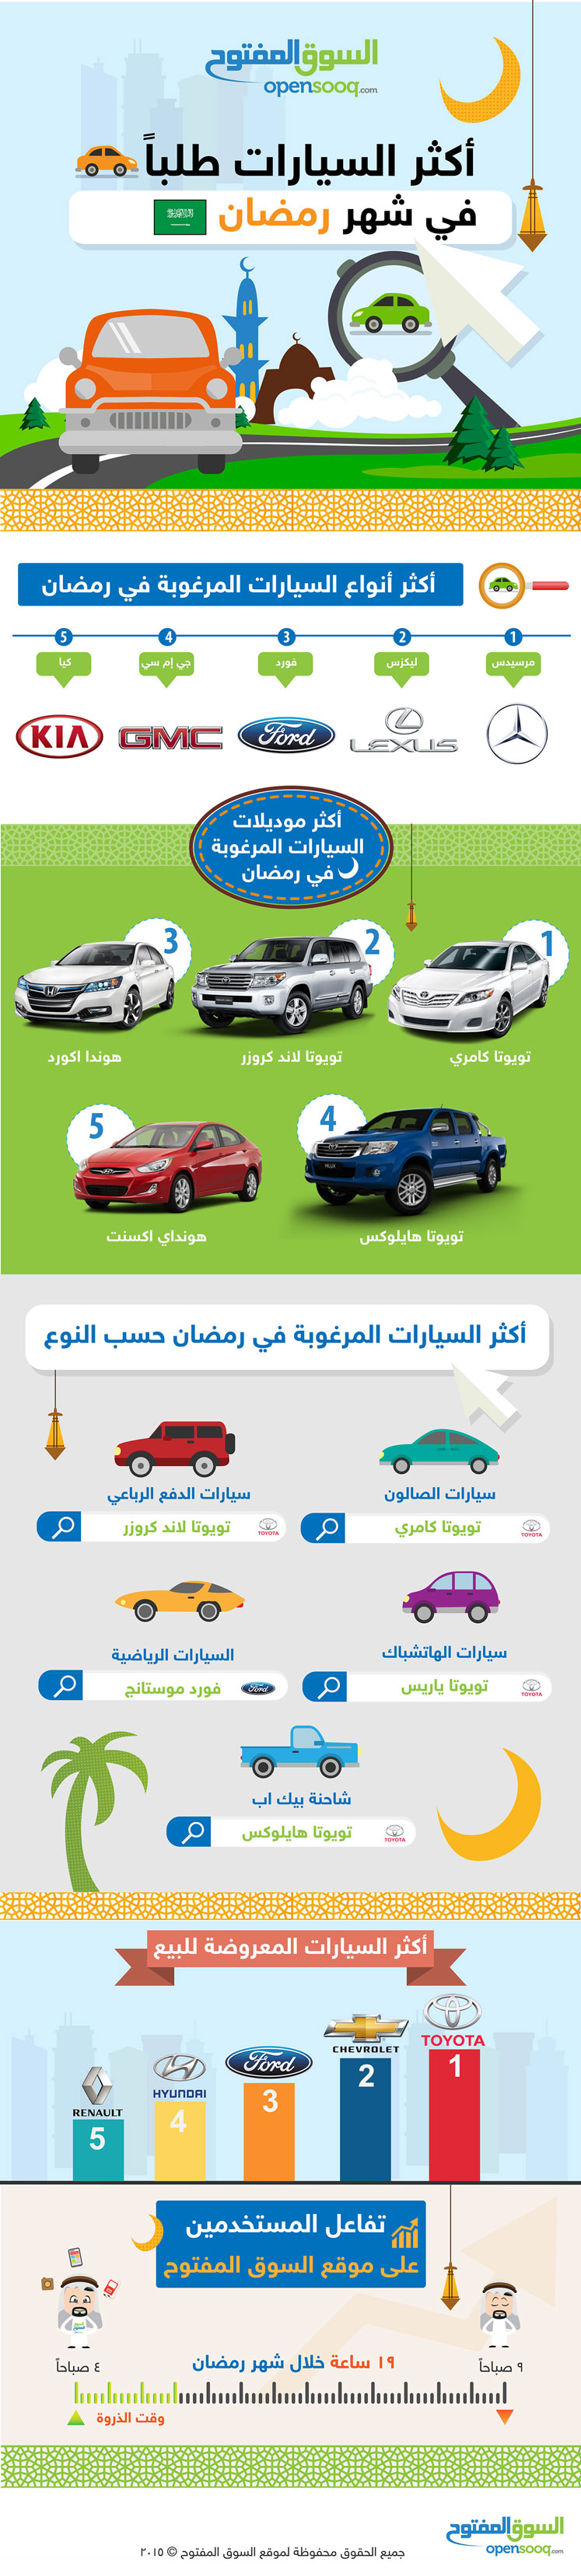 أكثر السيارات طلباً في رمضان  Infographic_Opensooq_AR_web